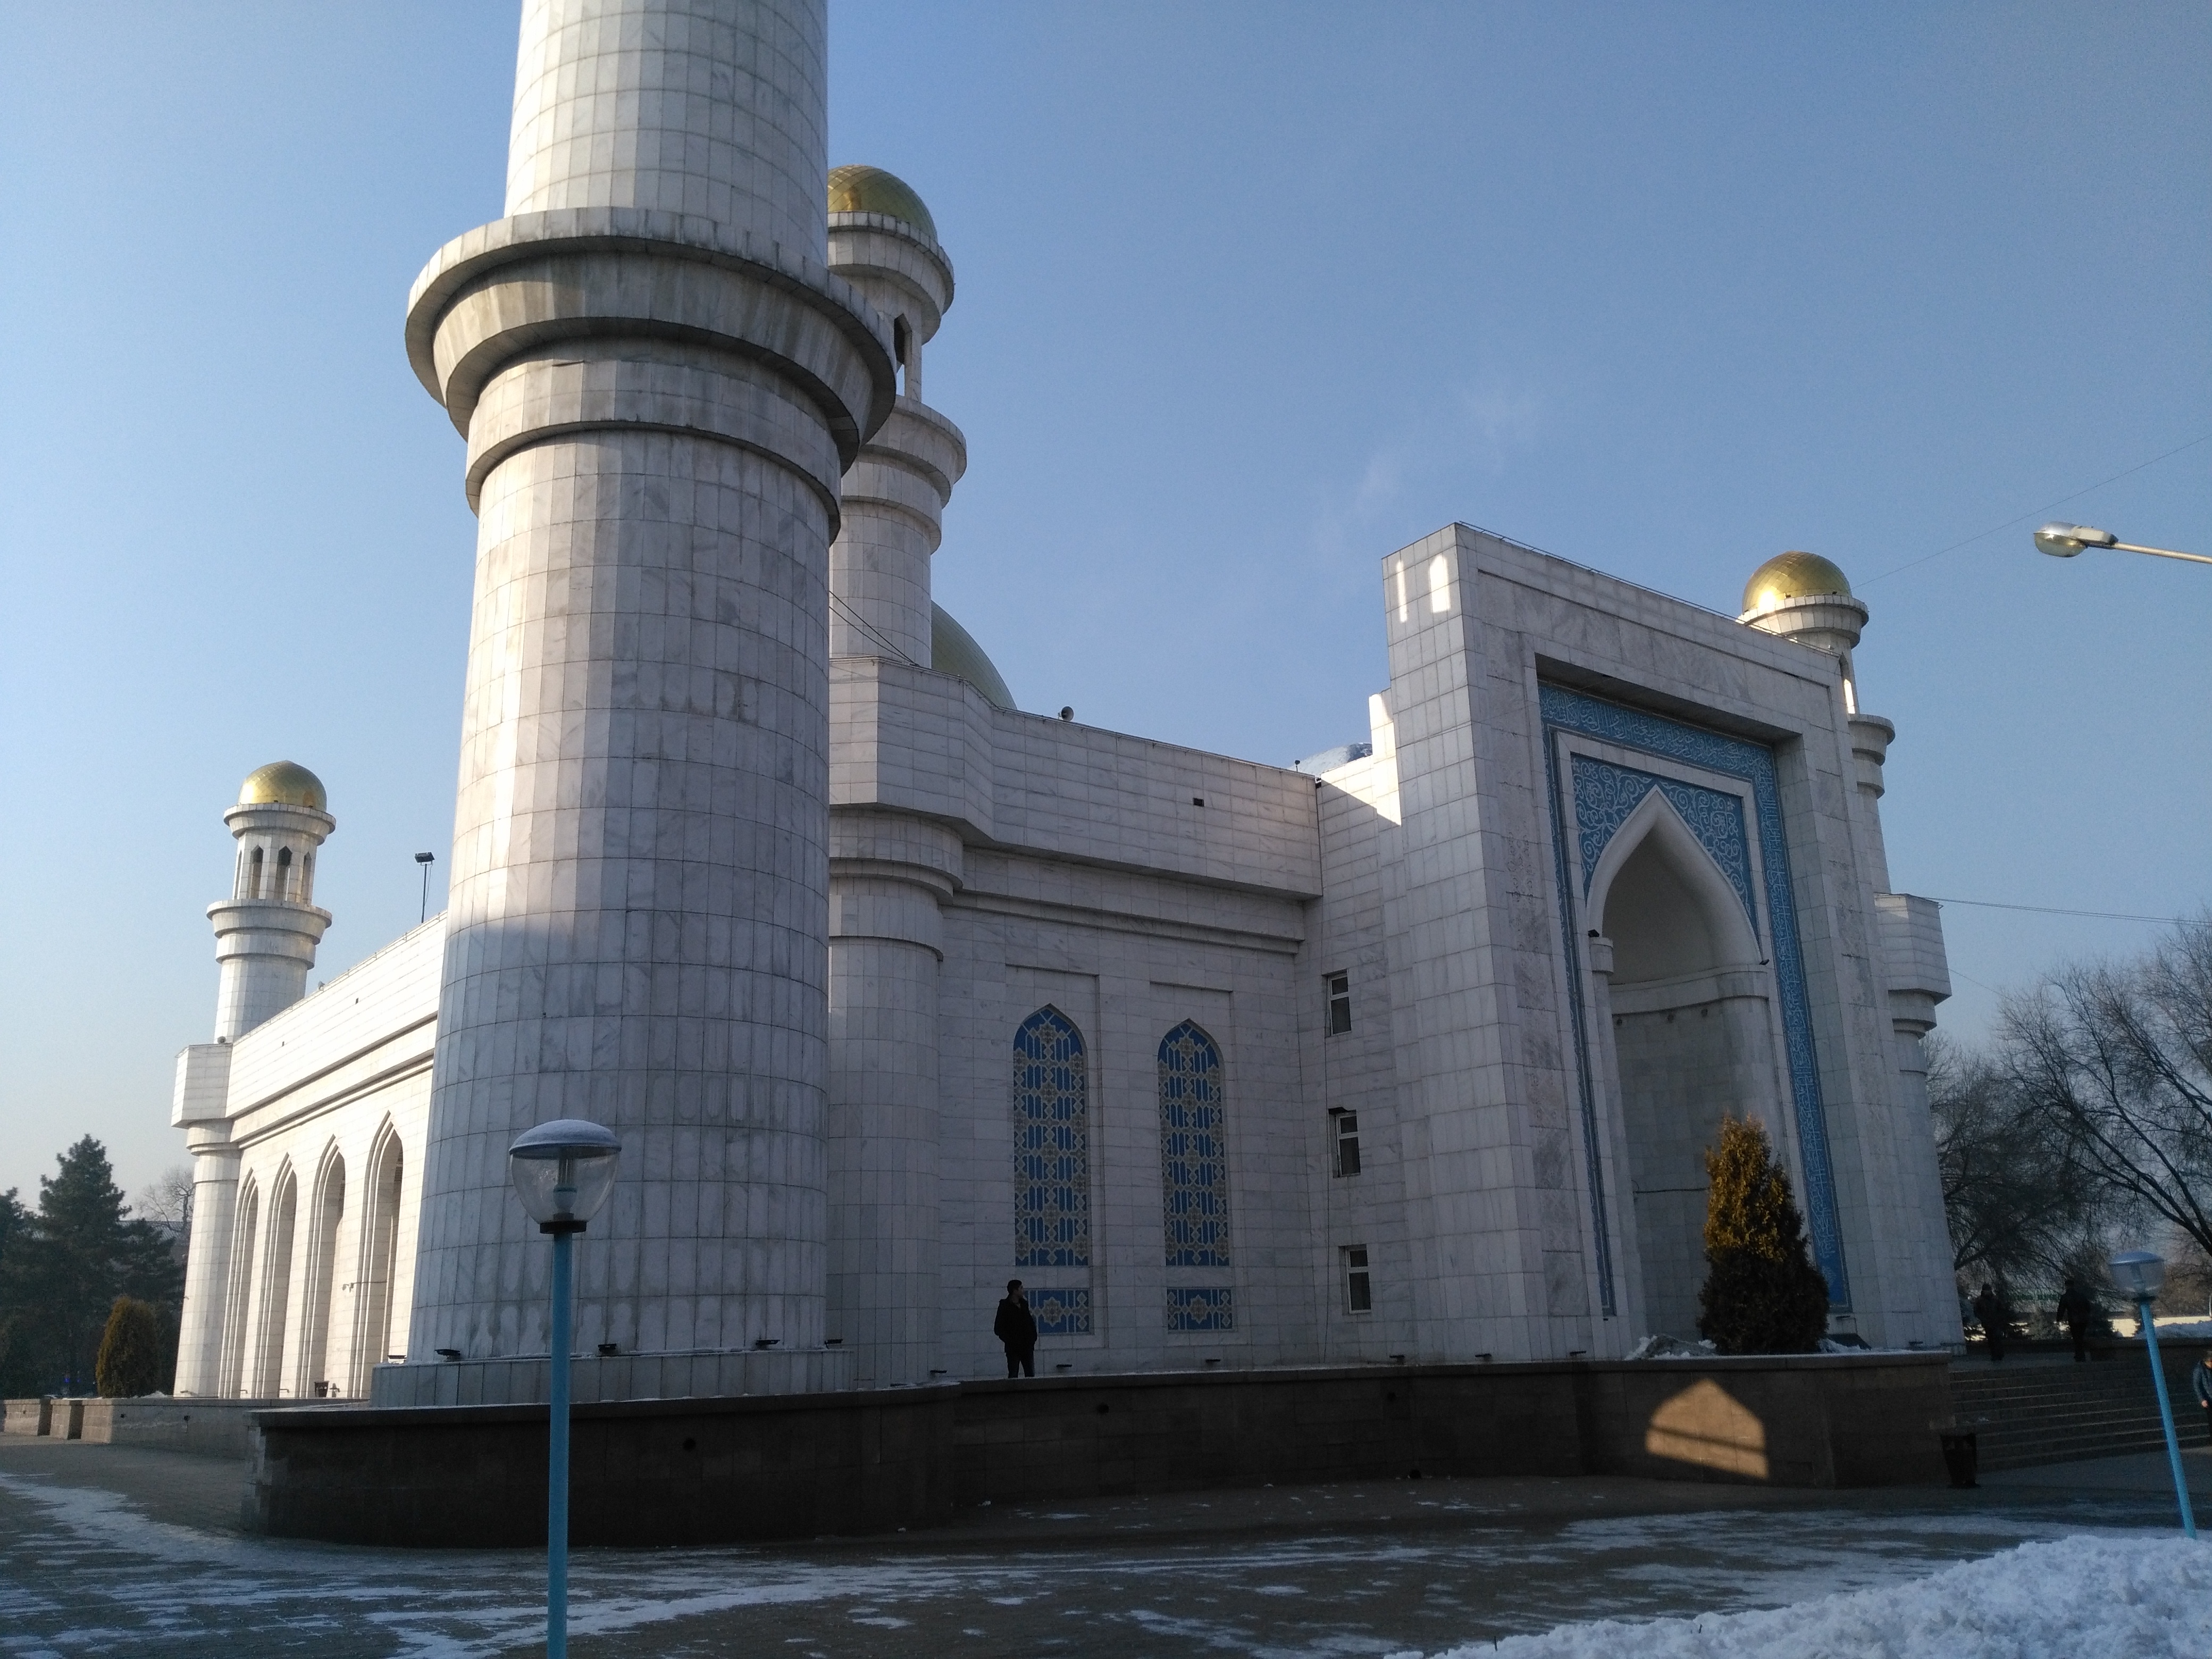 Facade of Central Mosque Almaty.